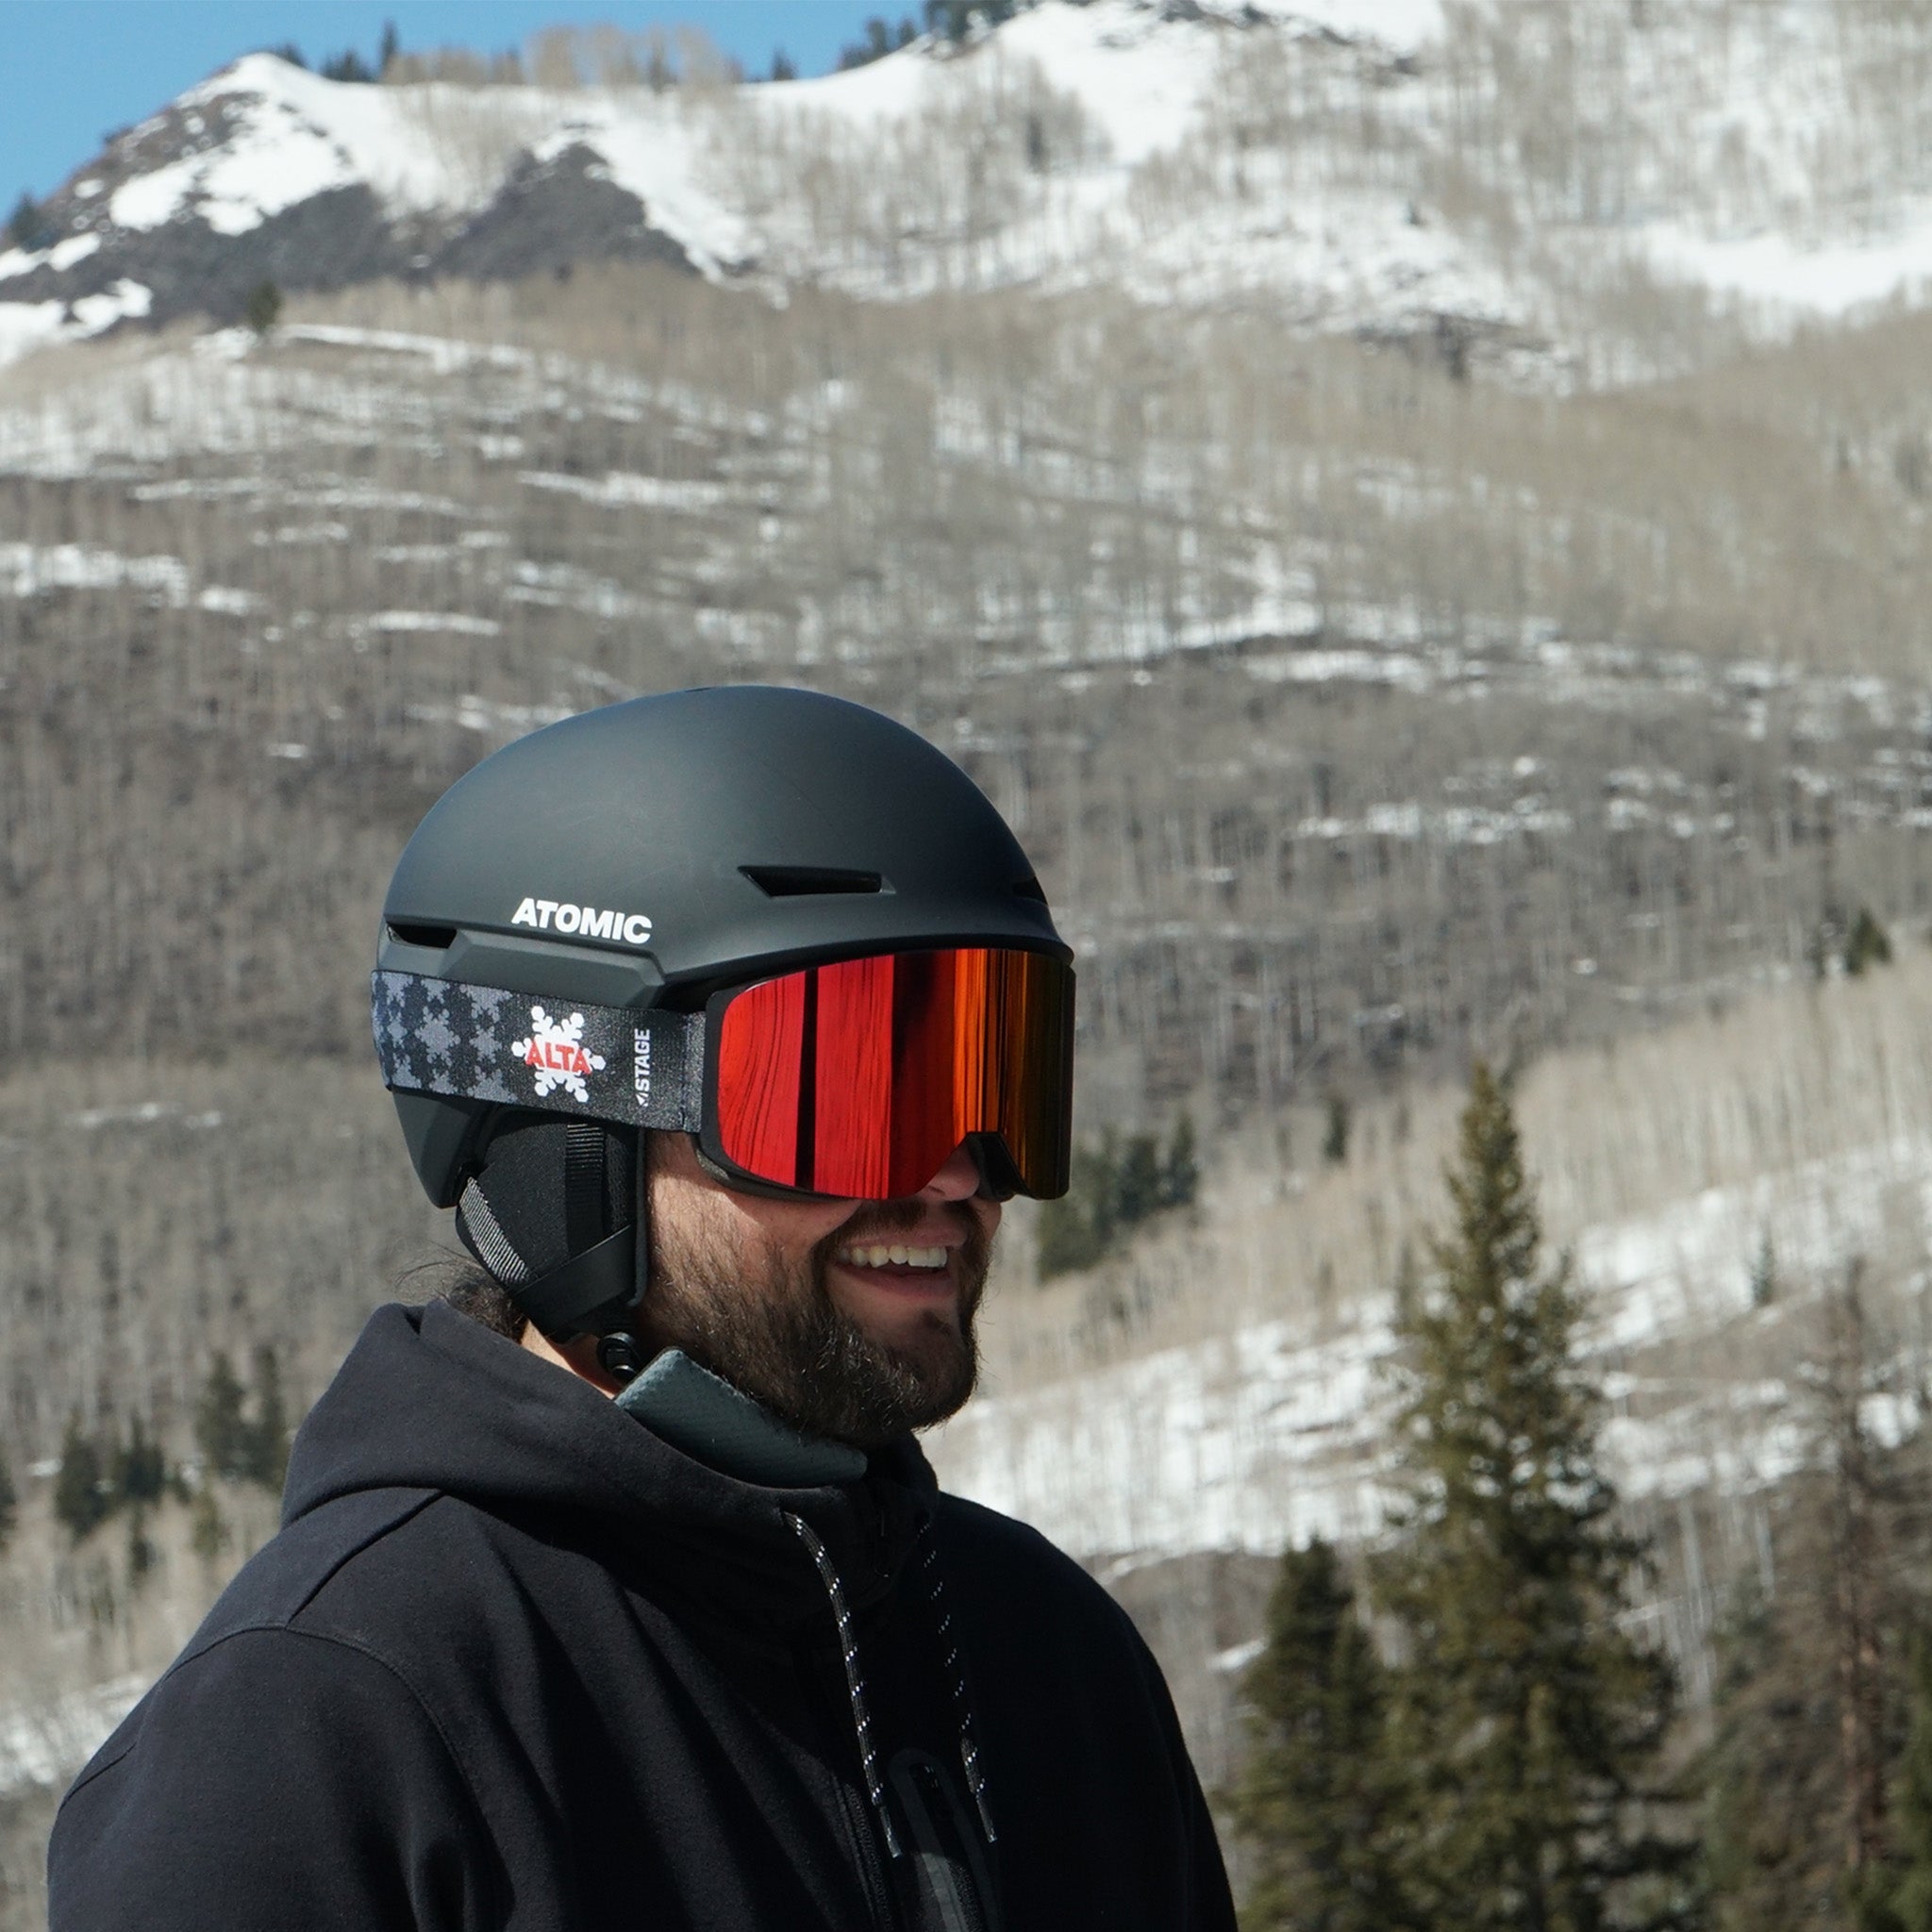 STAGE Custom Ski Goggles - ALTA Propnetic Ski Goggle w/ Red Revo Lens - Custom Snow Goggles for ski resorts